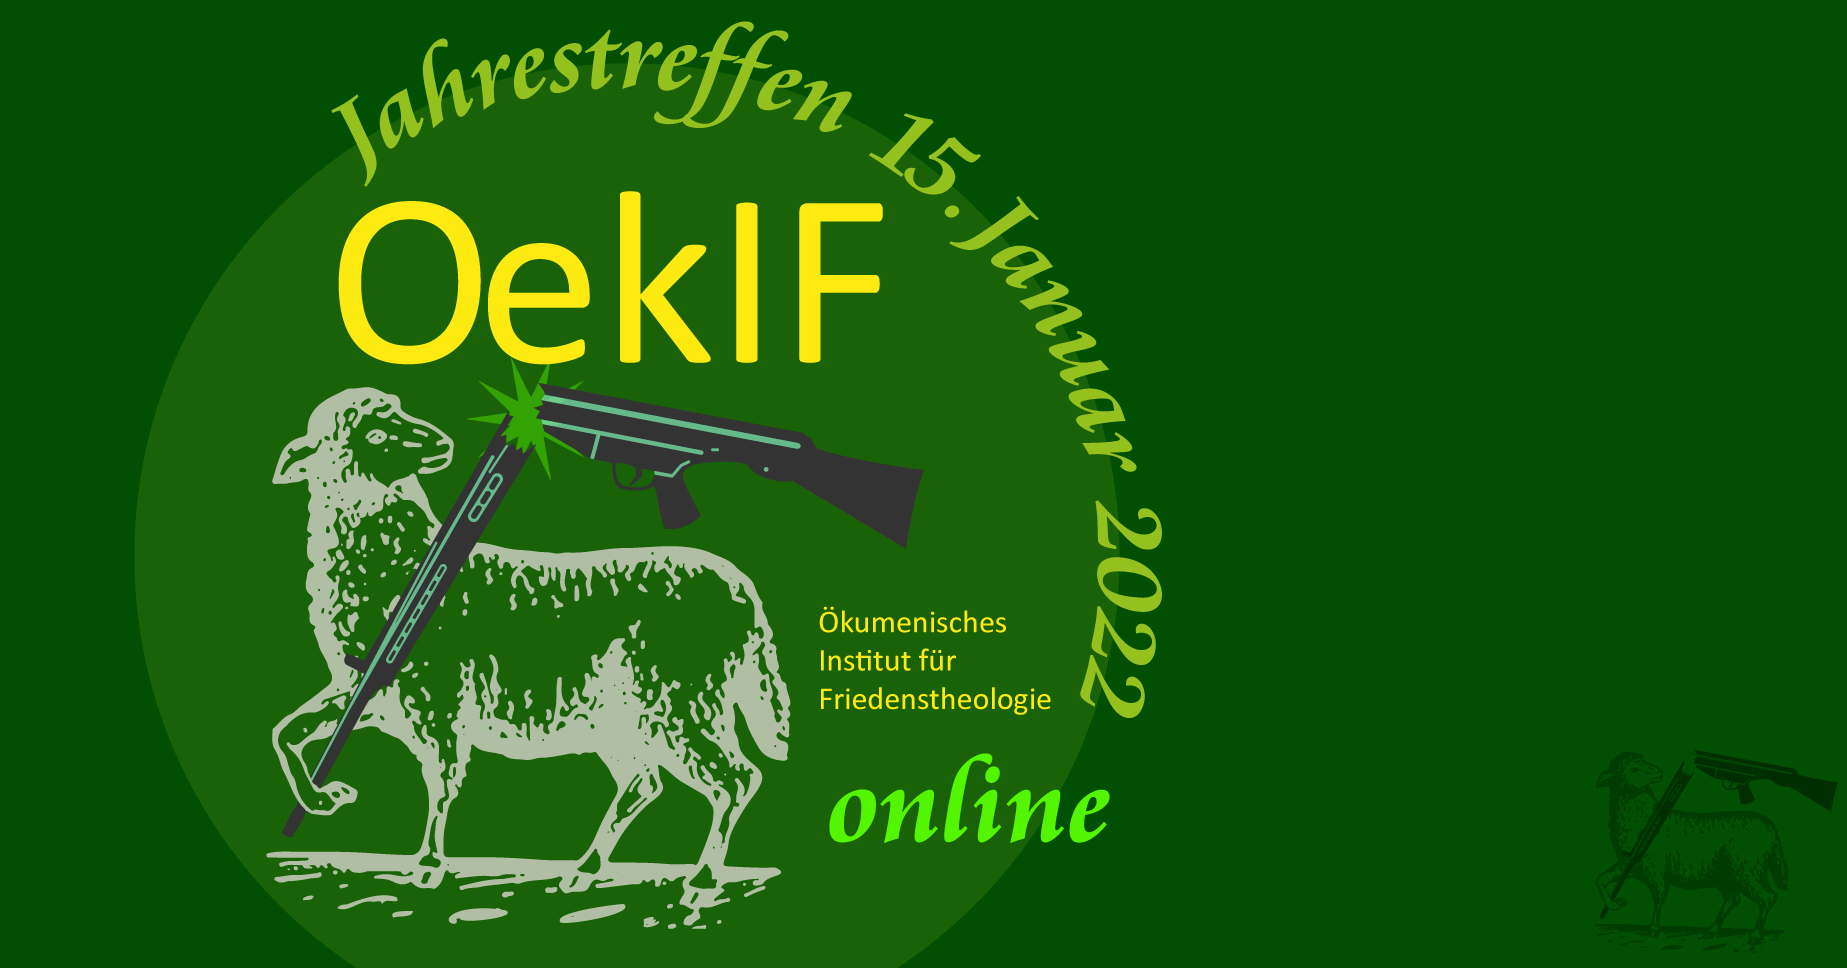 Ökumenisches Institut für Friedenstheologie, OekIF, Jahrestreffen  2022.